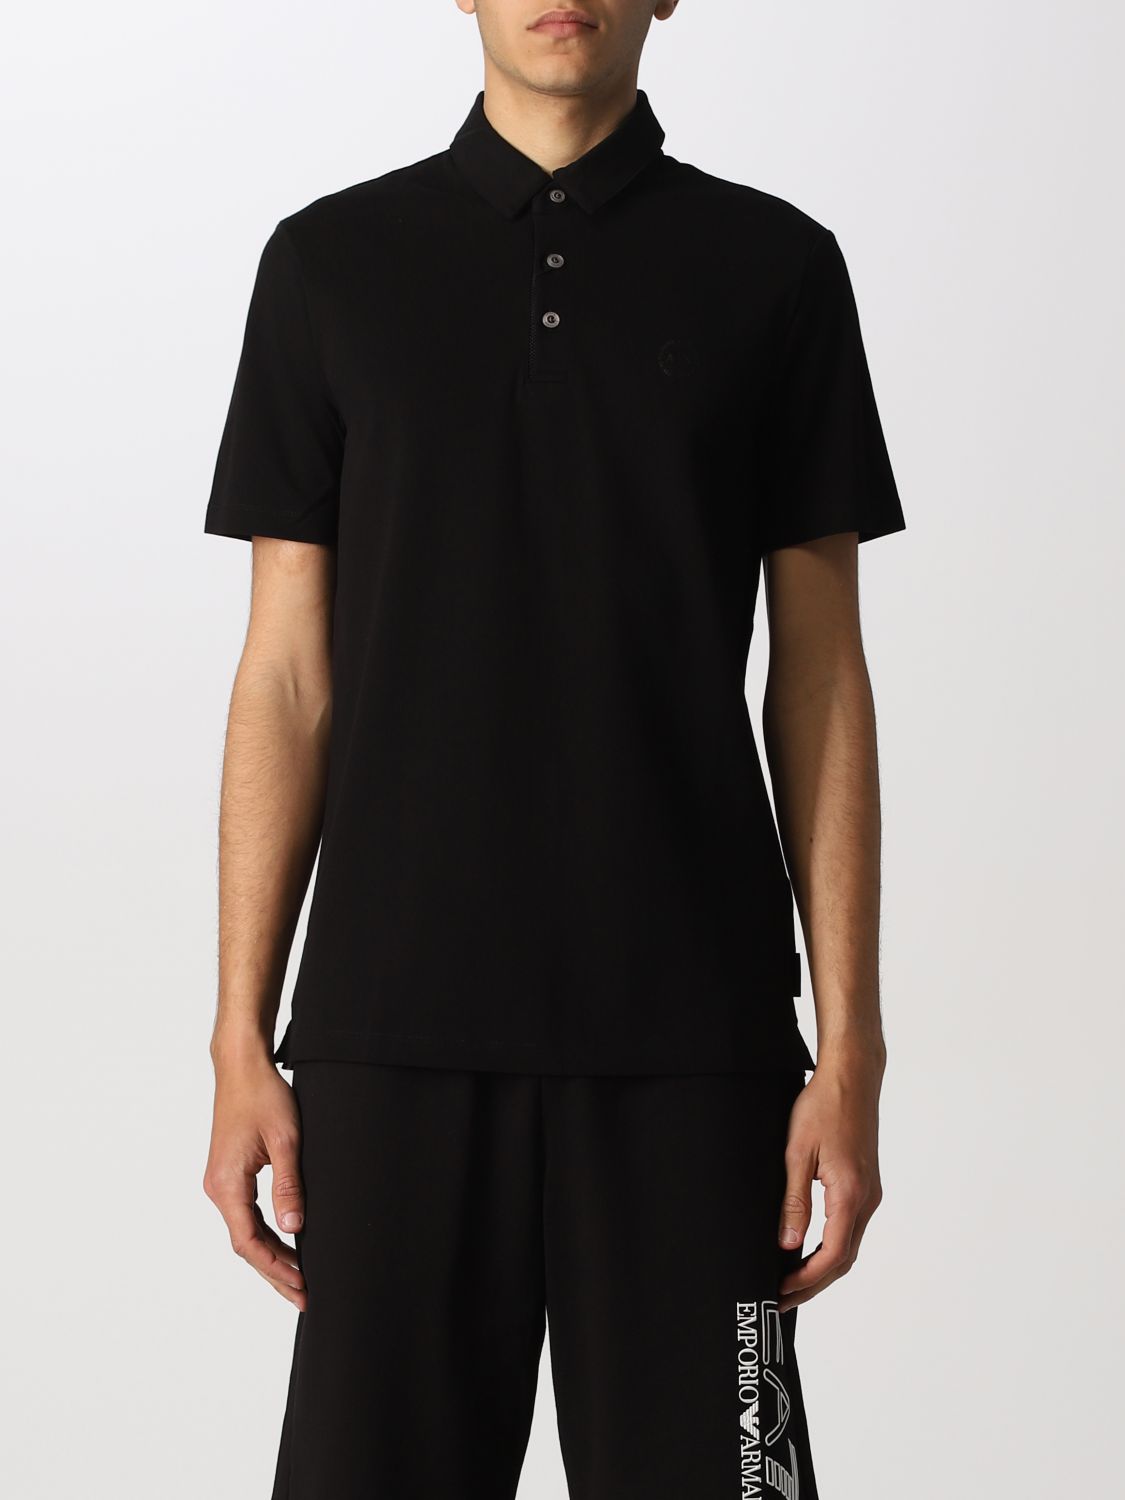 ARMANI EXCHANGE: Polo shirt men | Polo Shirt Armani Exchange Men Black ...